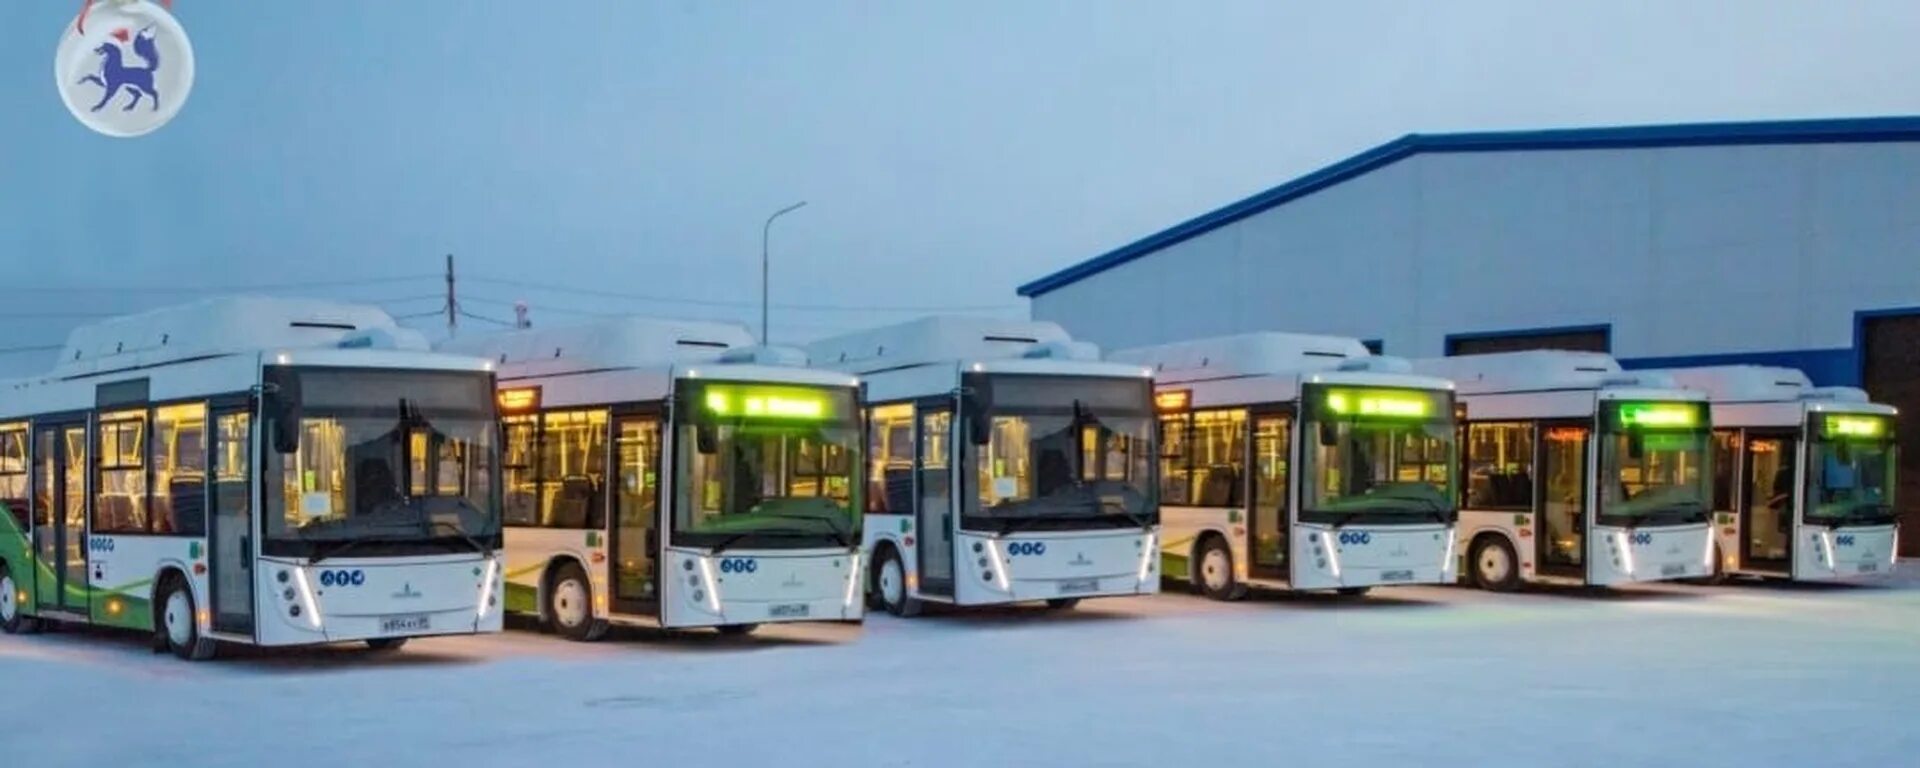 Новые автобусы. Автобус для севера. Экологичный общественный транспорт. Ямальский новый автобус.